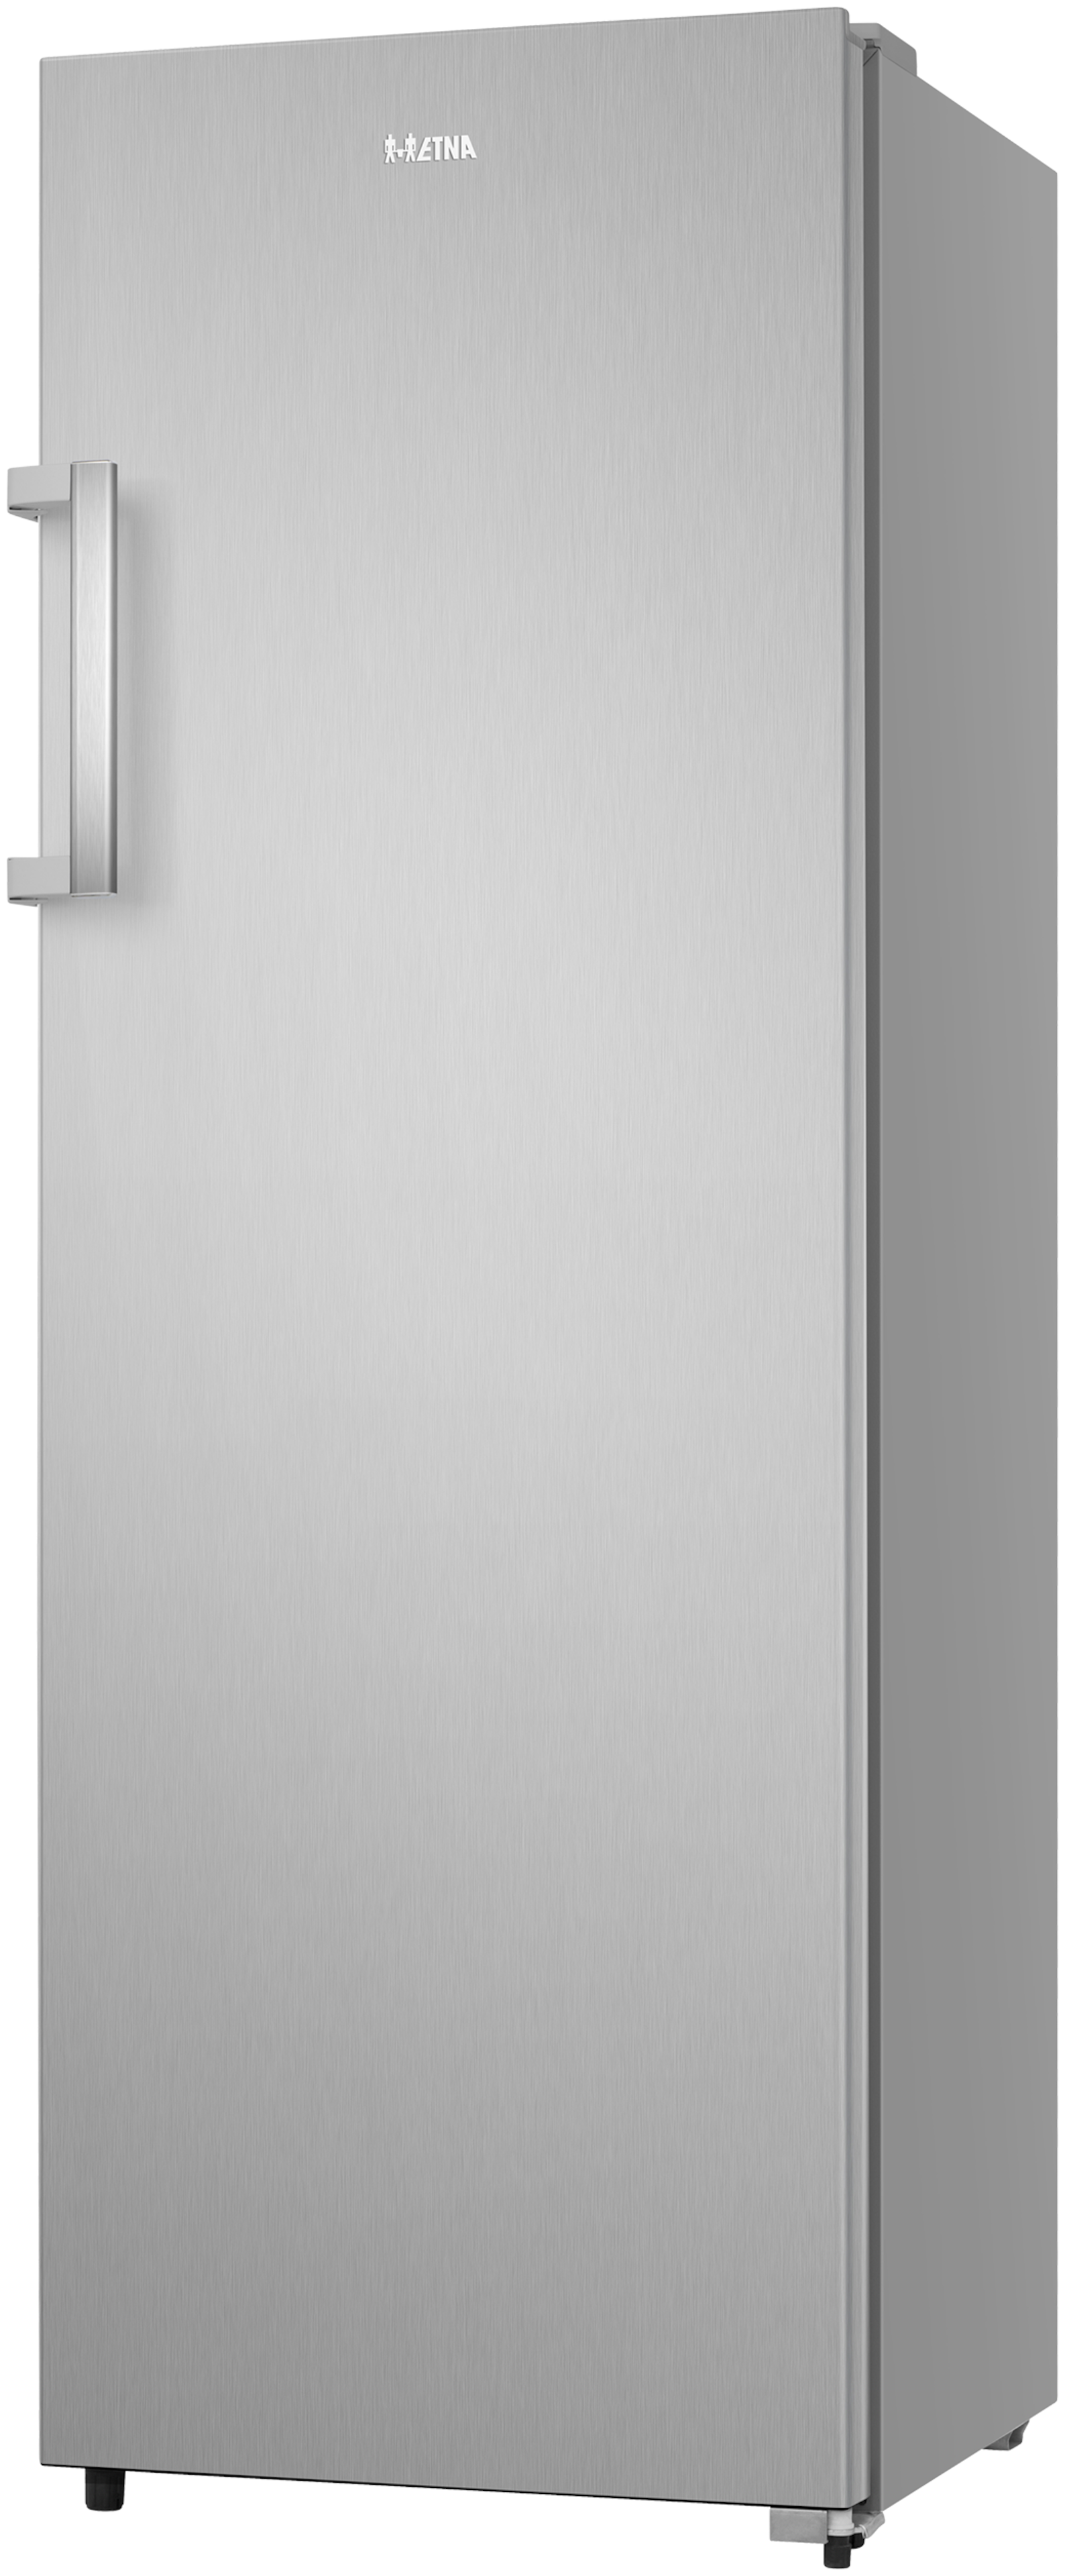 Etna koelkast vrijstaand KKV172RVS afbeelding 4